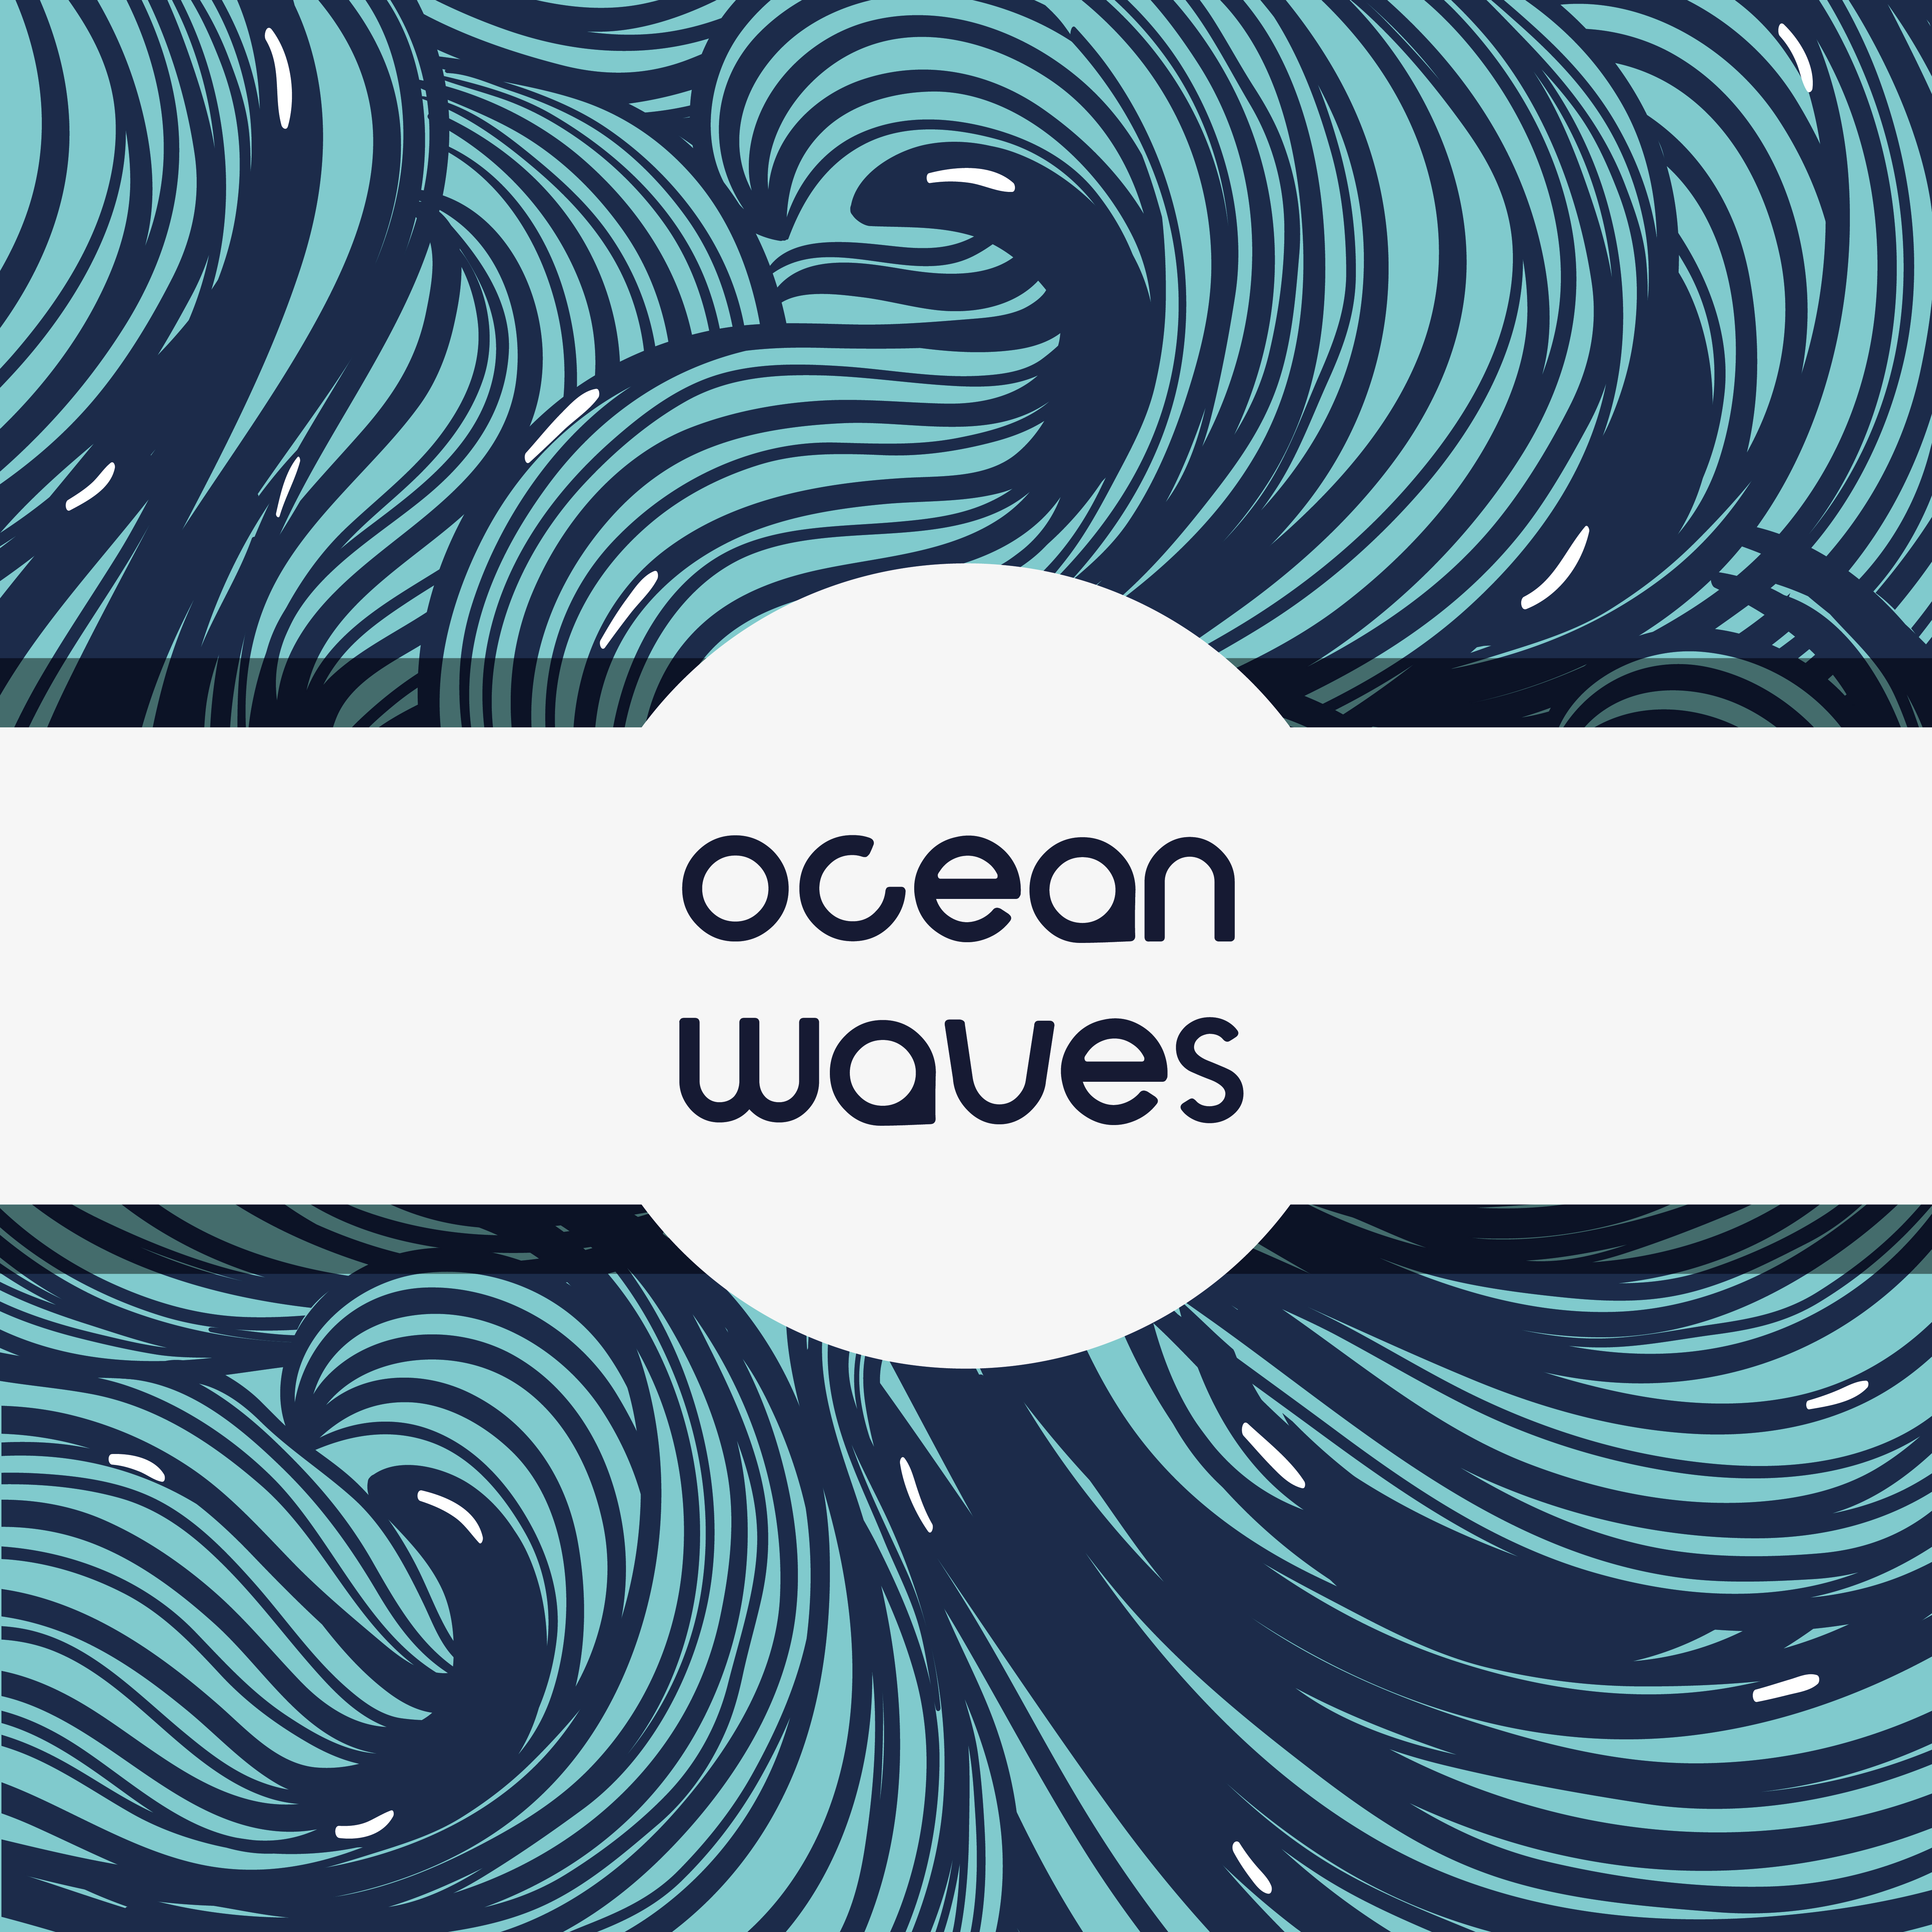 Download natural ocean waves background design - Download Free ...